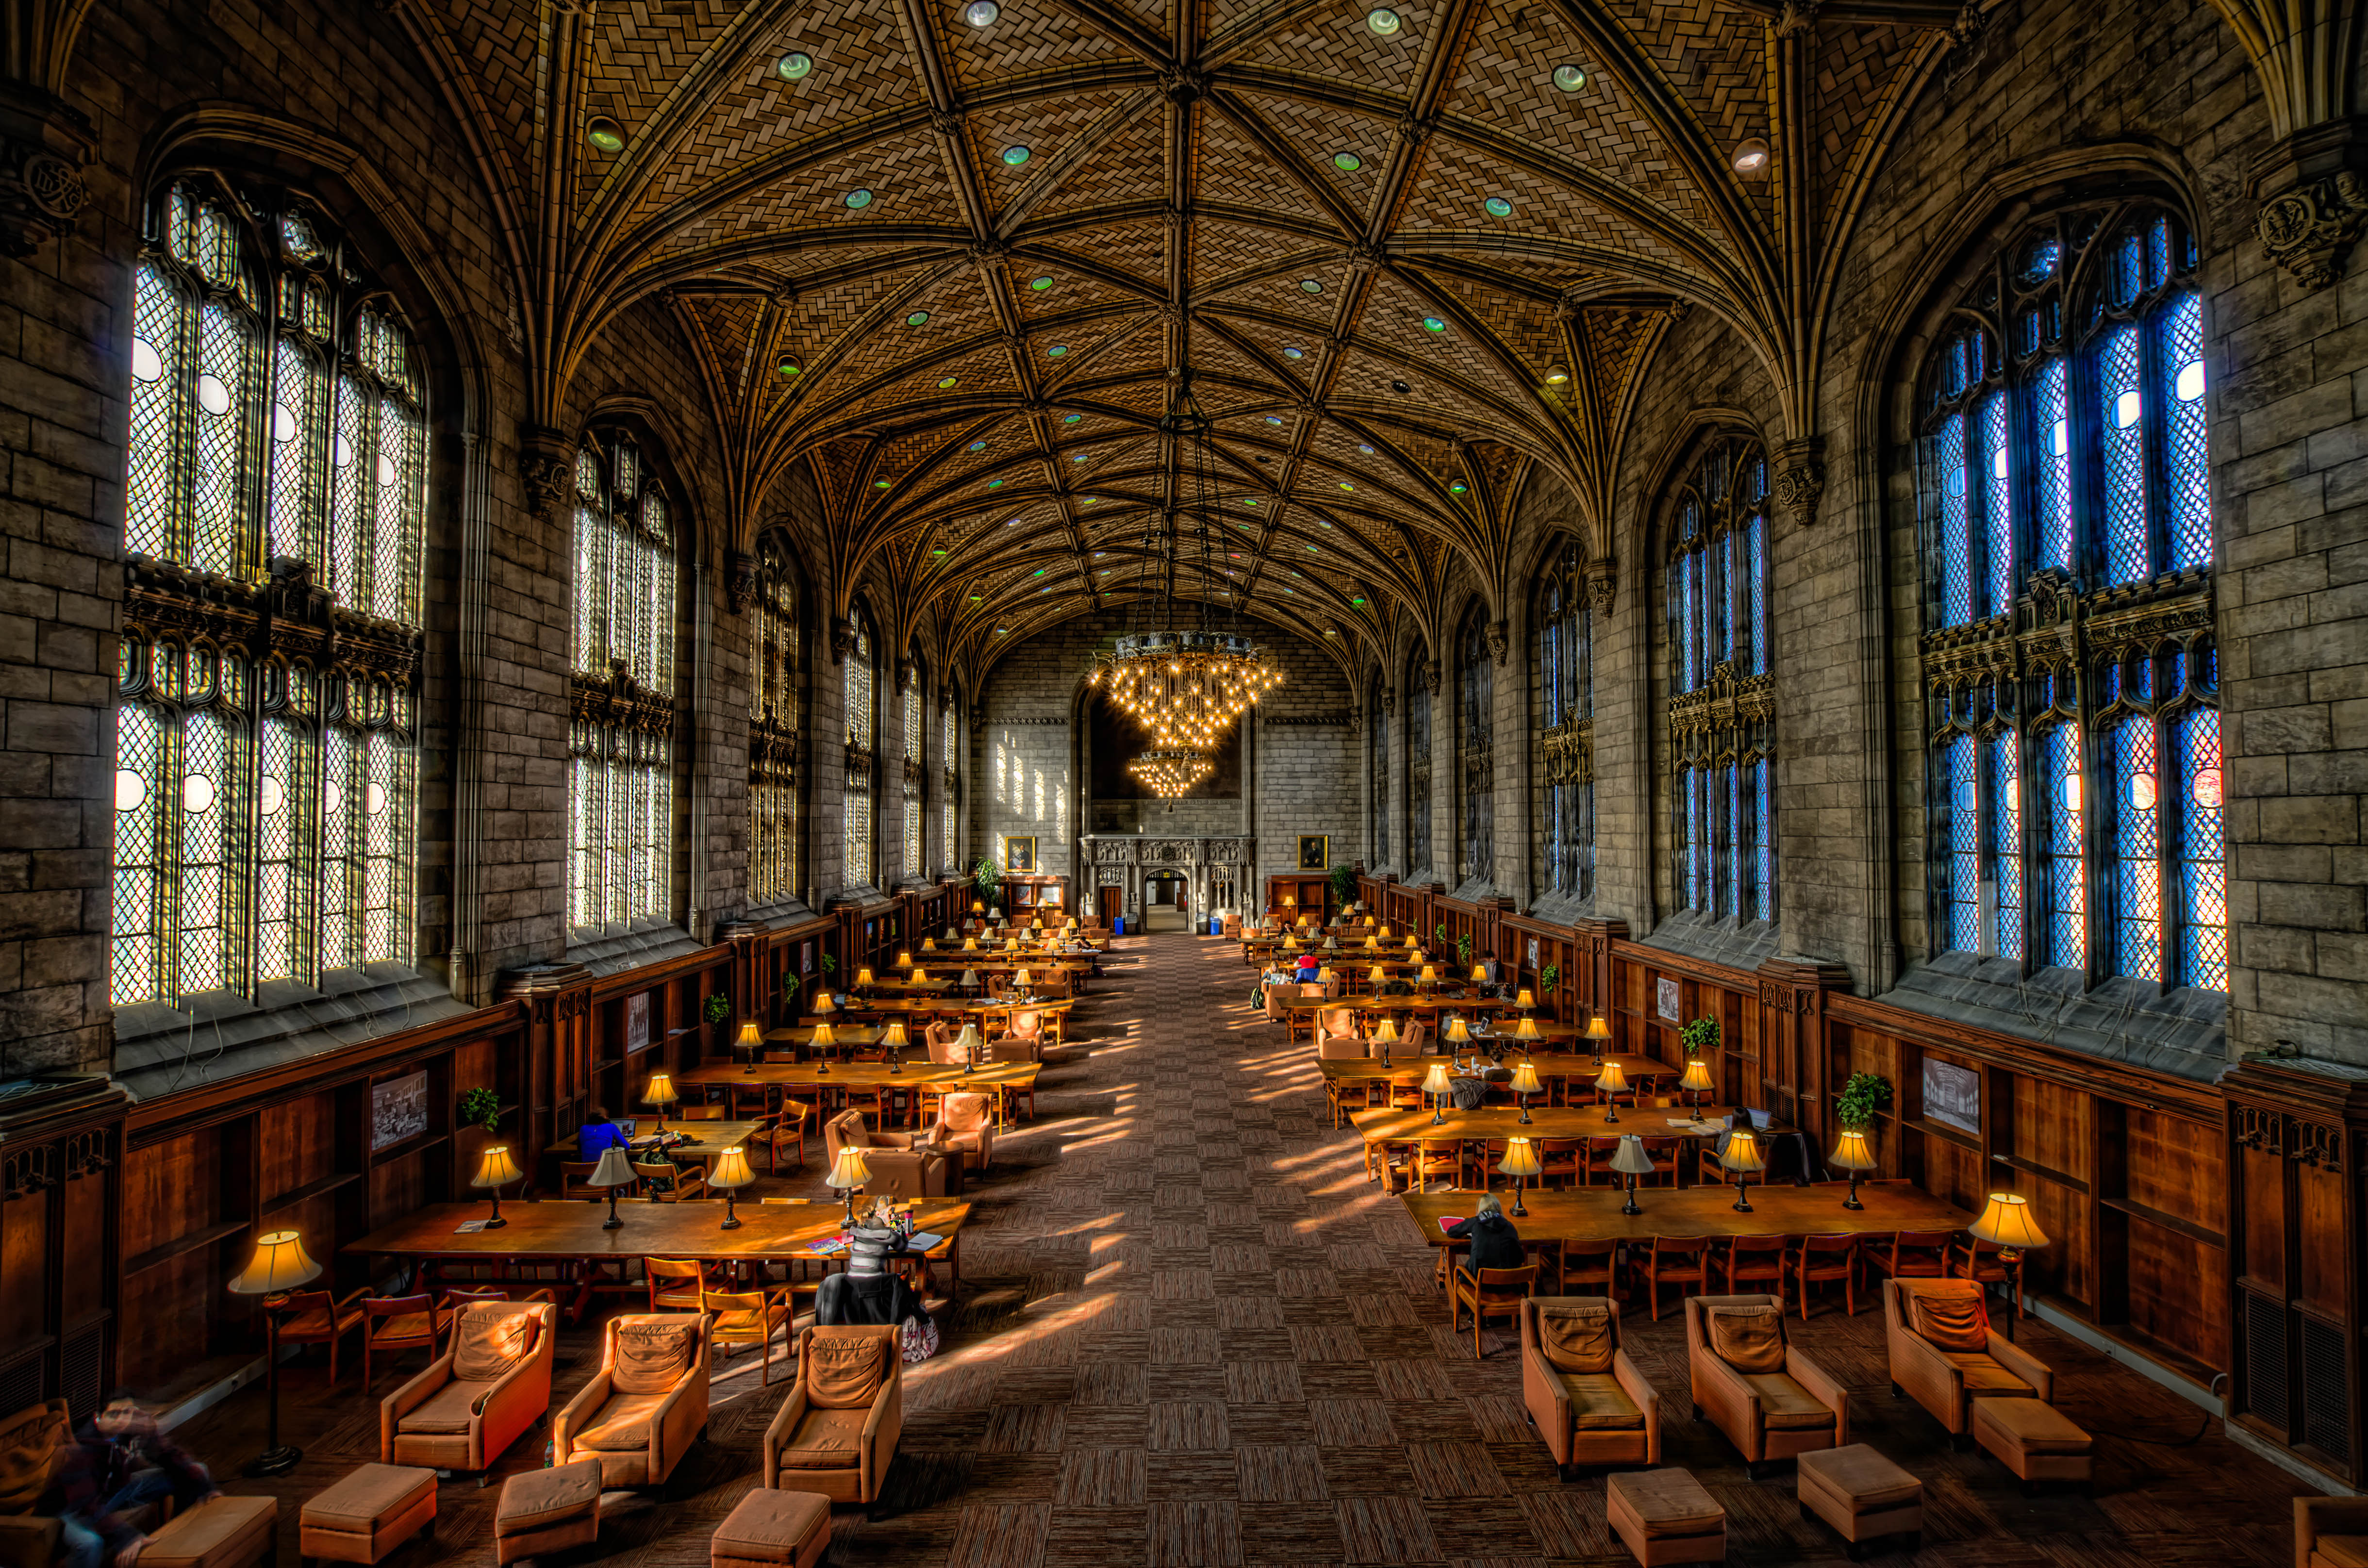 File:University of Chicago, Harper Library.jpg - Wikimedia Commons